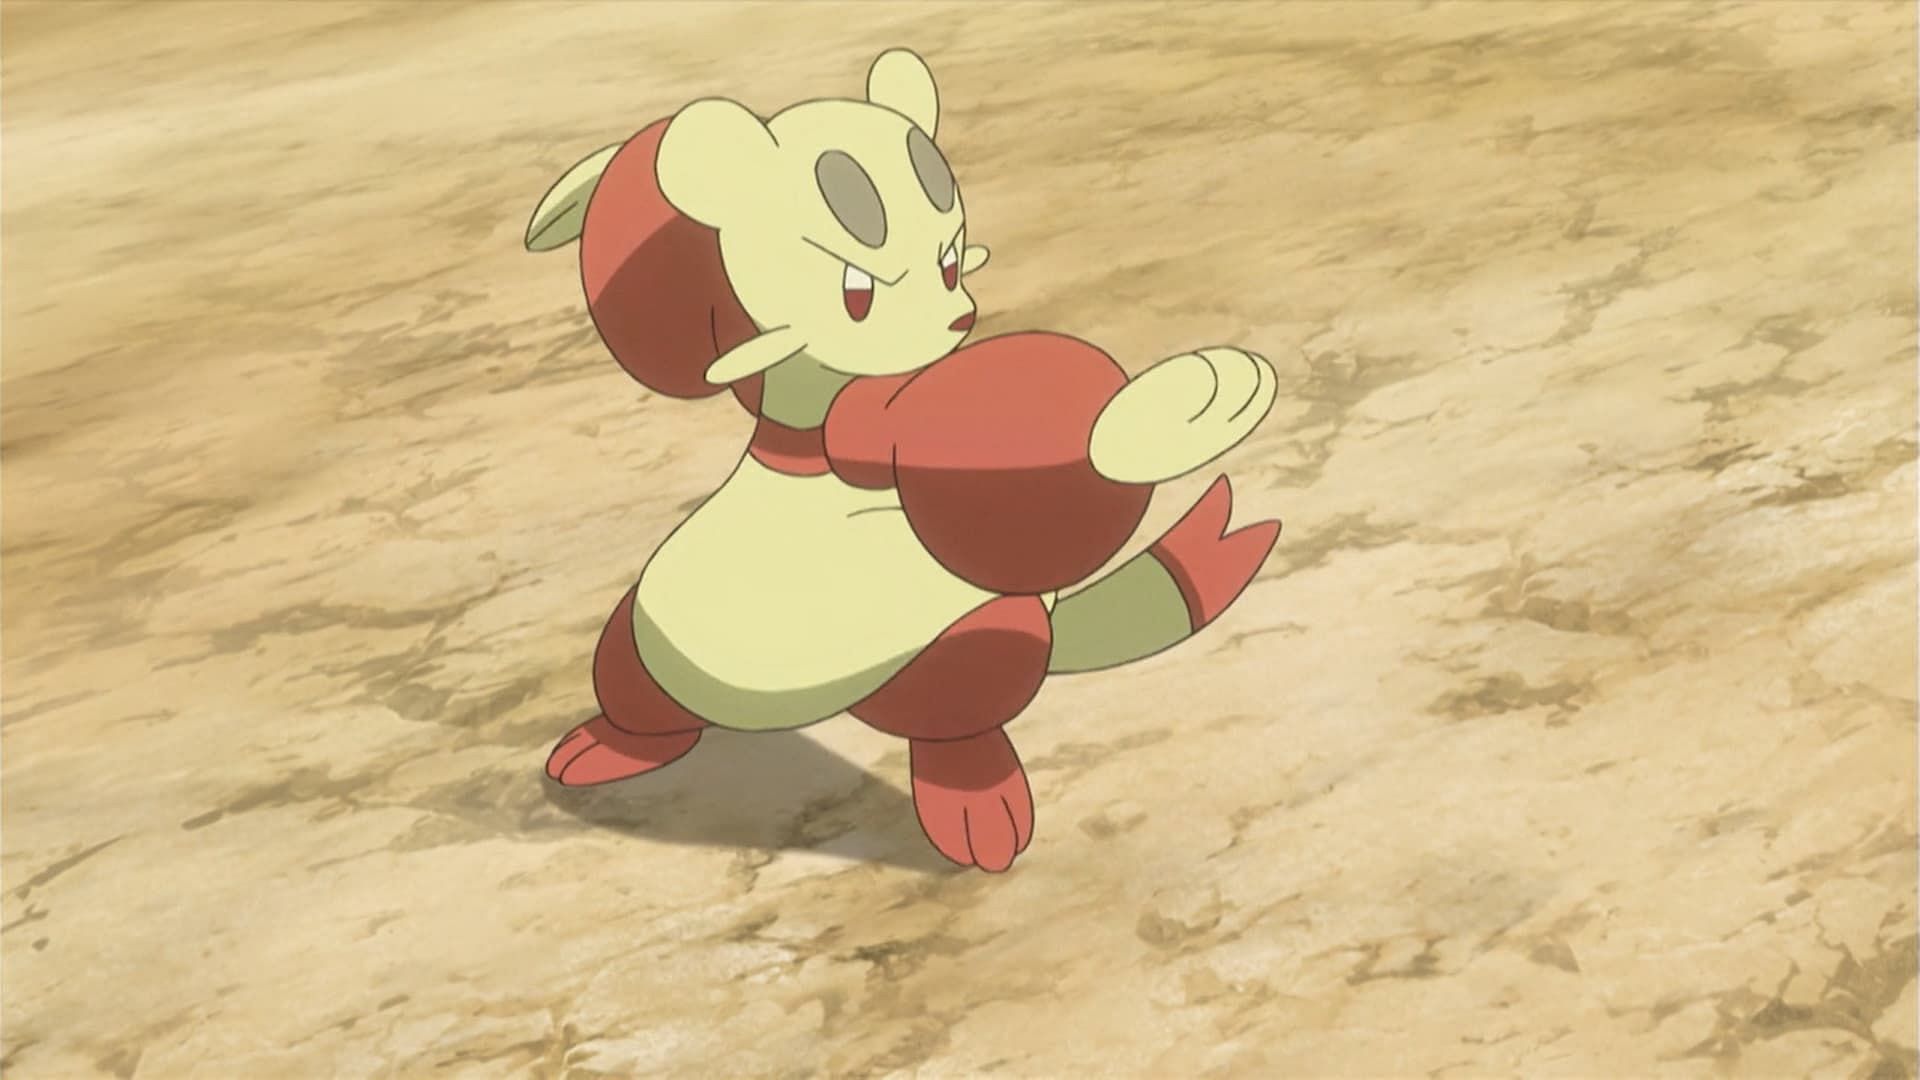 Mienfoo come visto nell'anime (Immagine tramite The Pokemon Company)